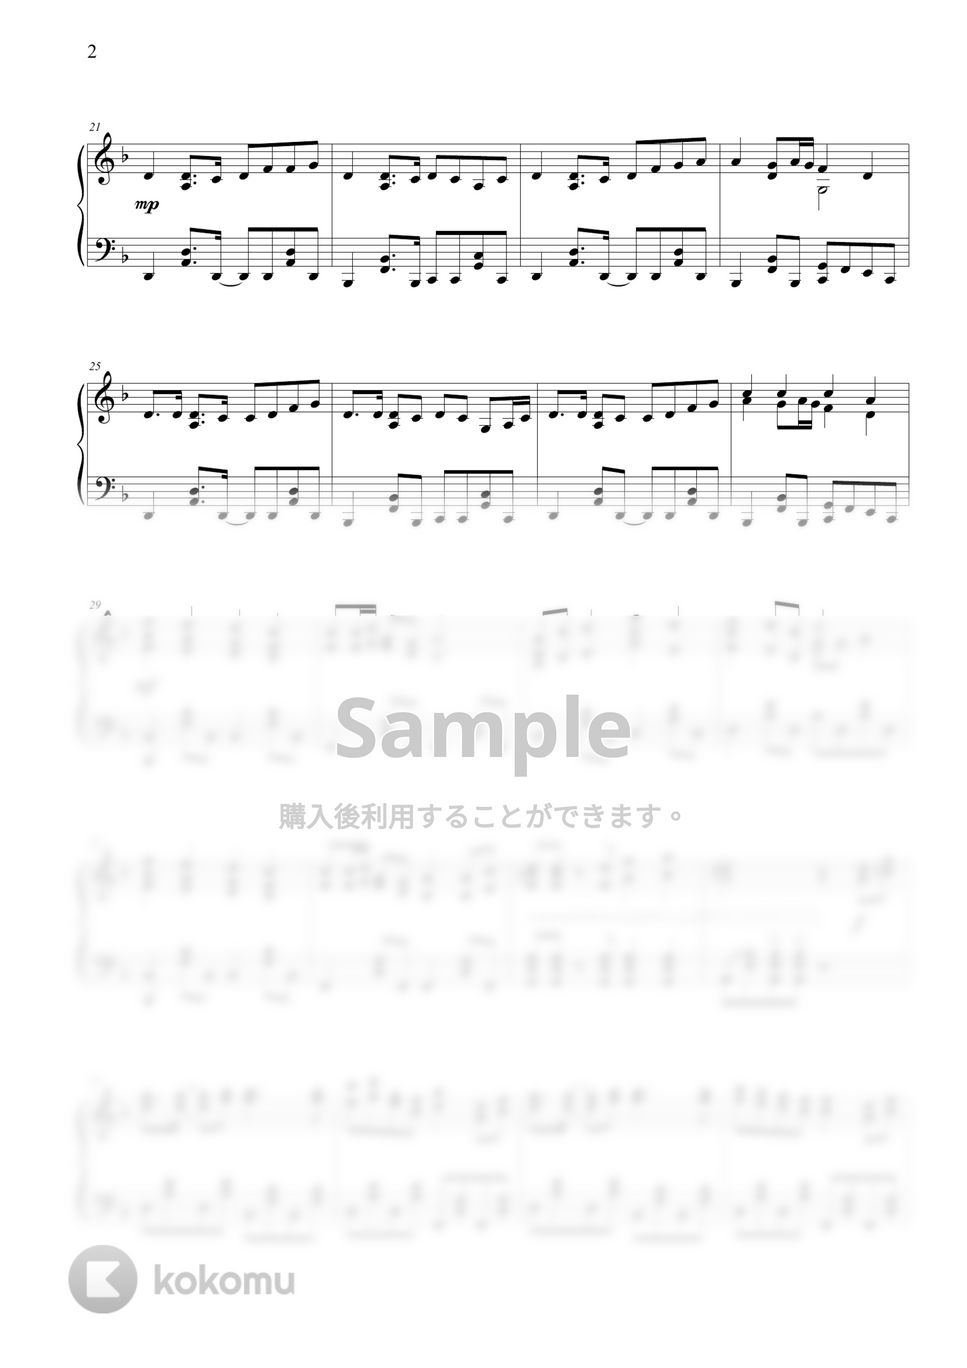 初音ミク - 千本桜 by THIS IS PIANO